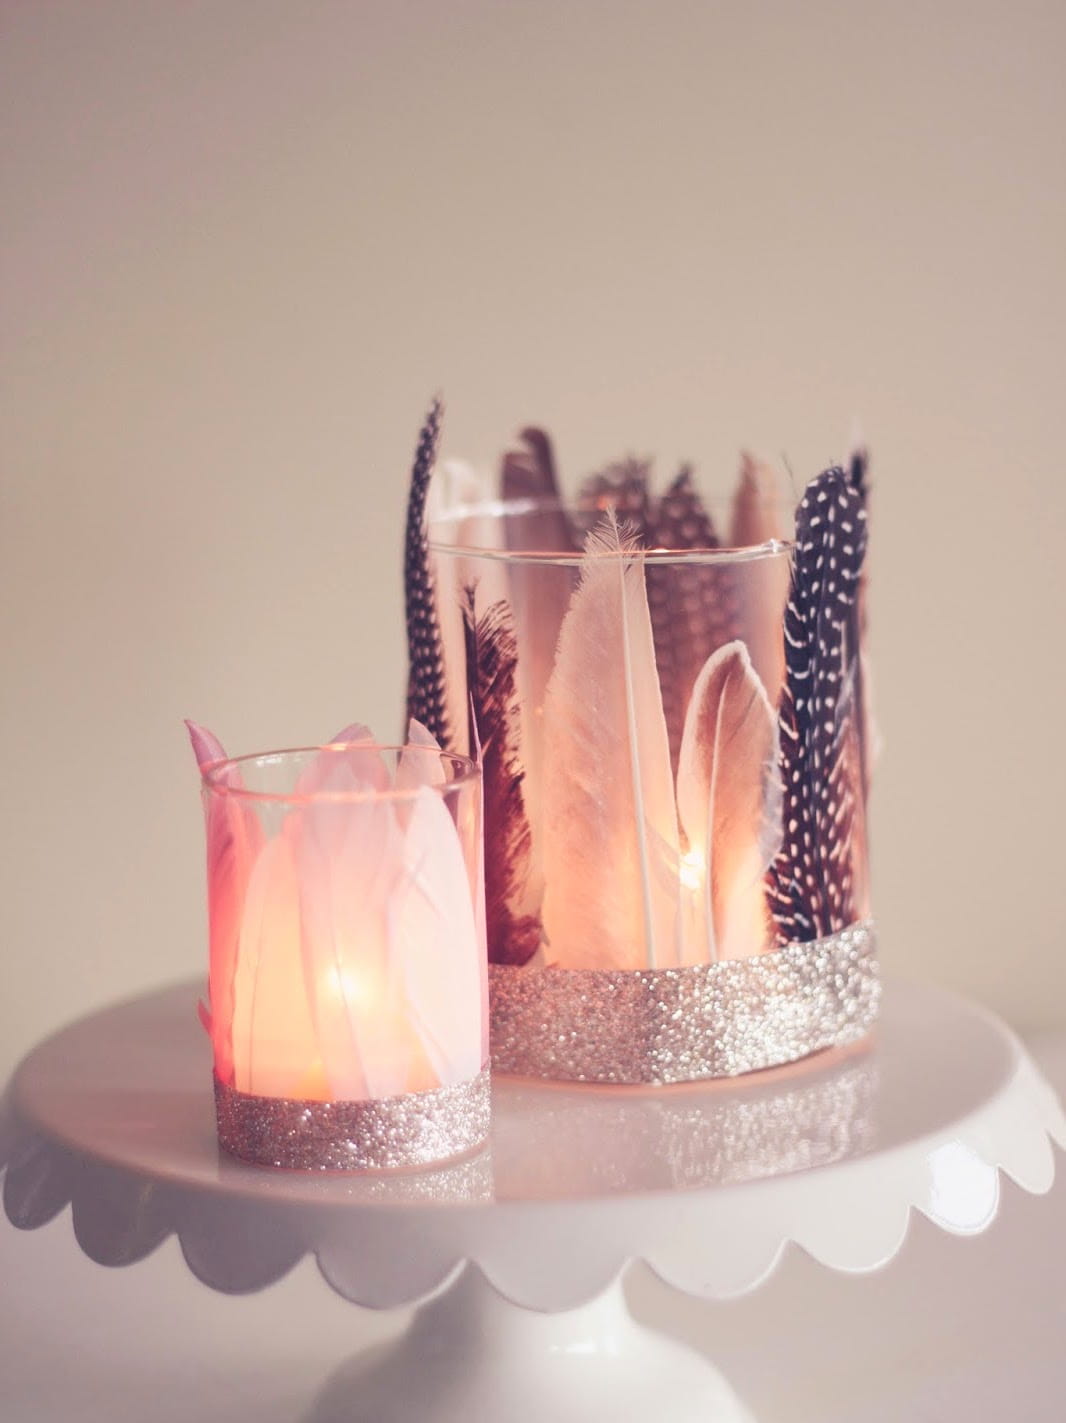 Создать невероятно романтическую обстановку можно с помощью декоративных подсвечников, выполненных из стеклянных стаканов и красивых перьев